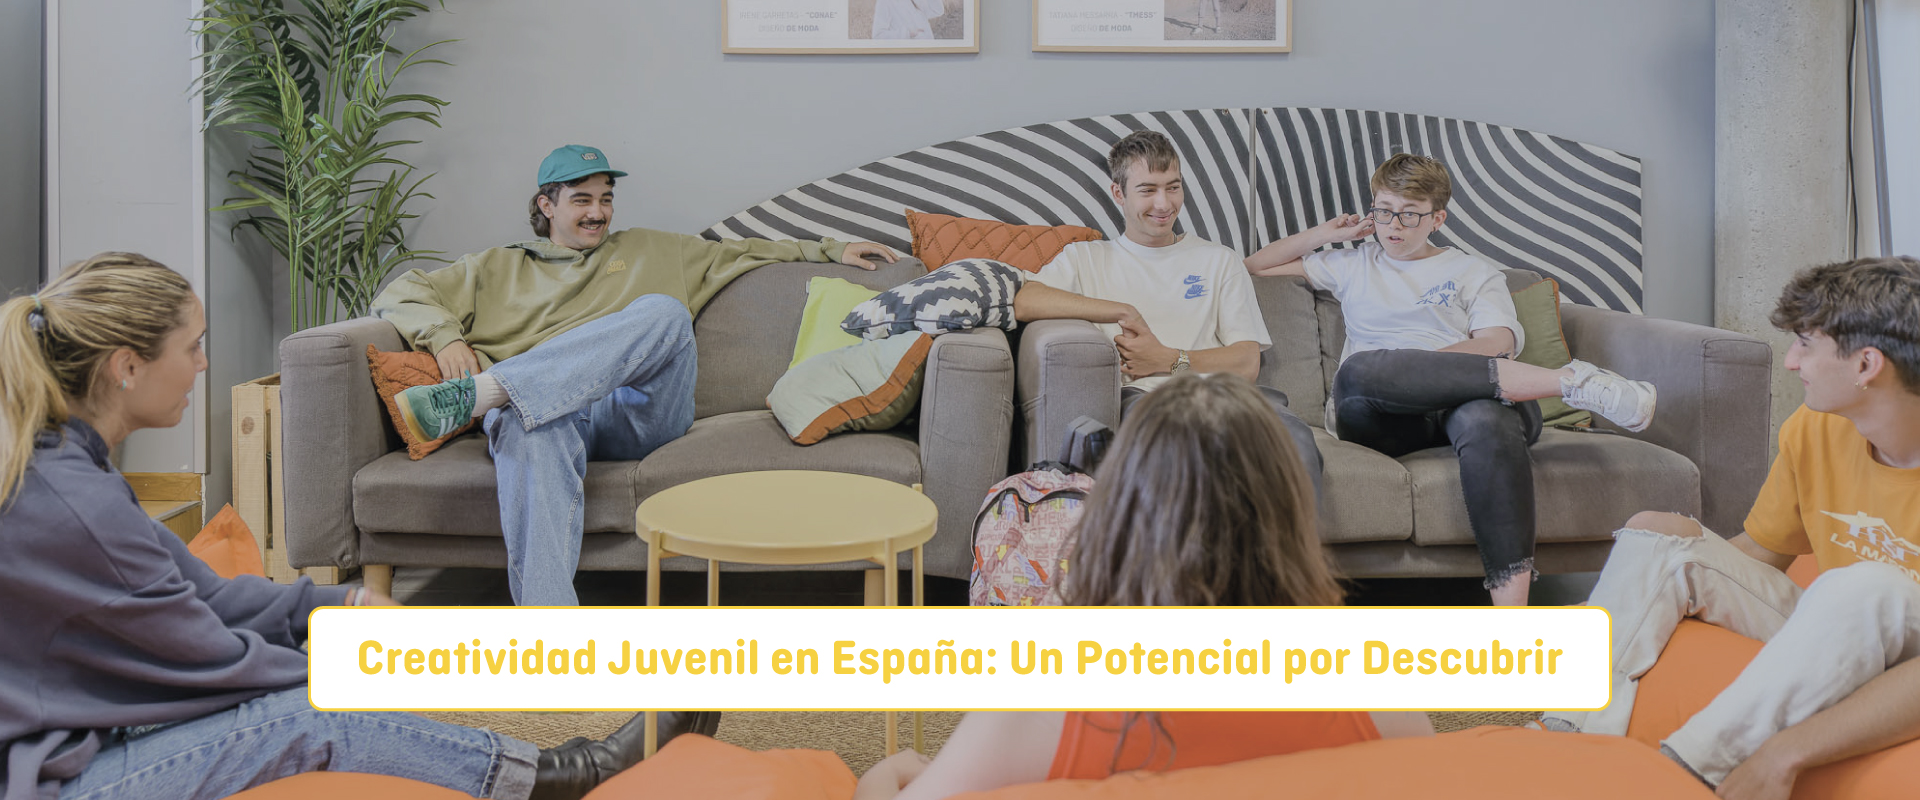 Creatividad en los jóvenes españoles: Un potencial por descubrir